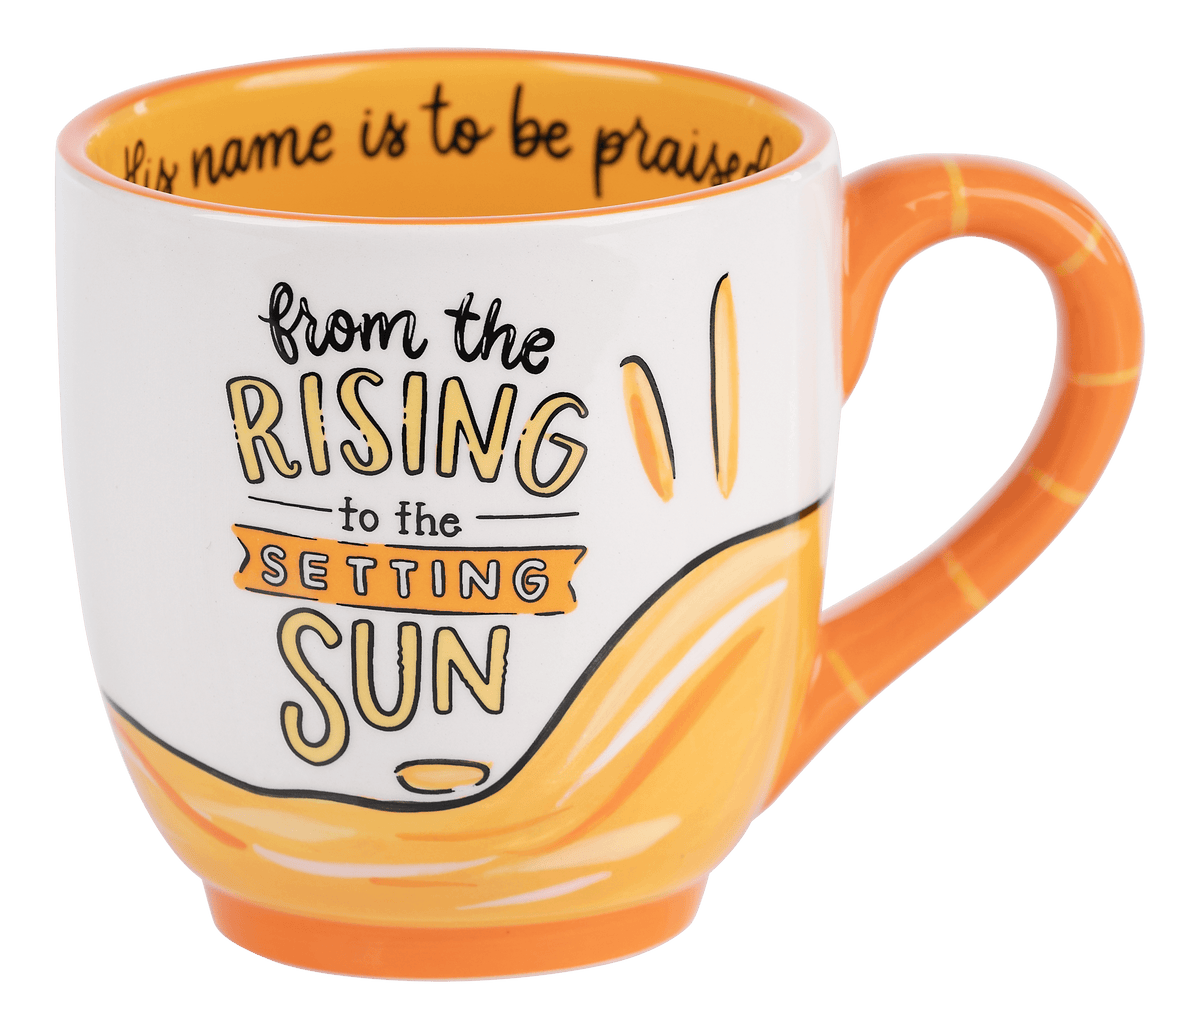 Sun Will Rise Coffee Mug 